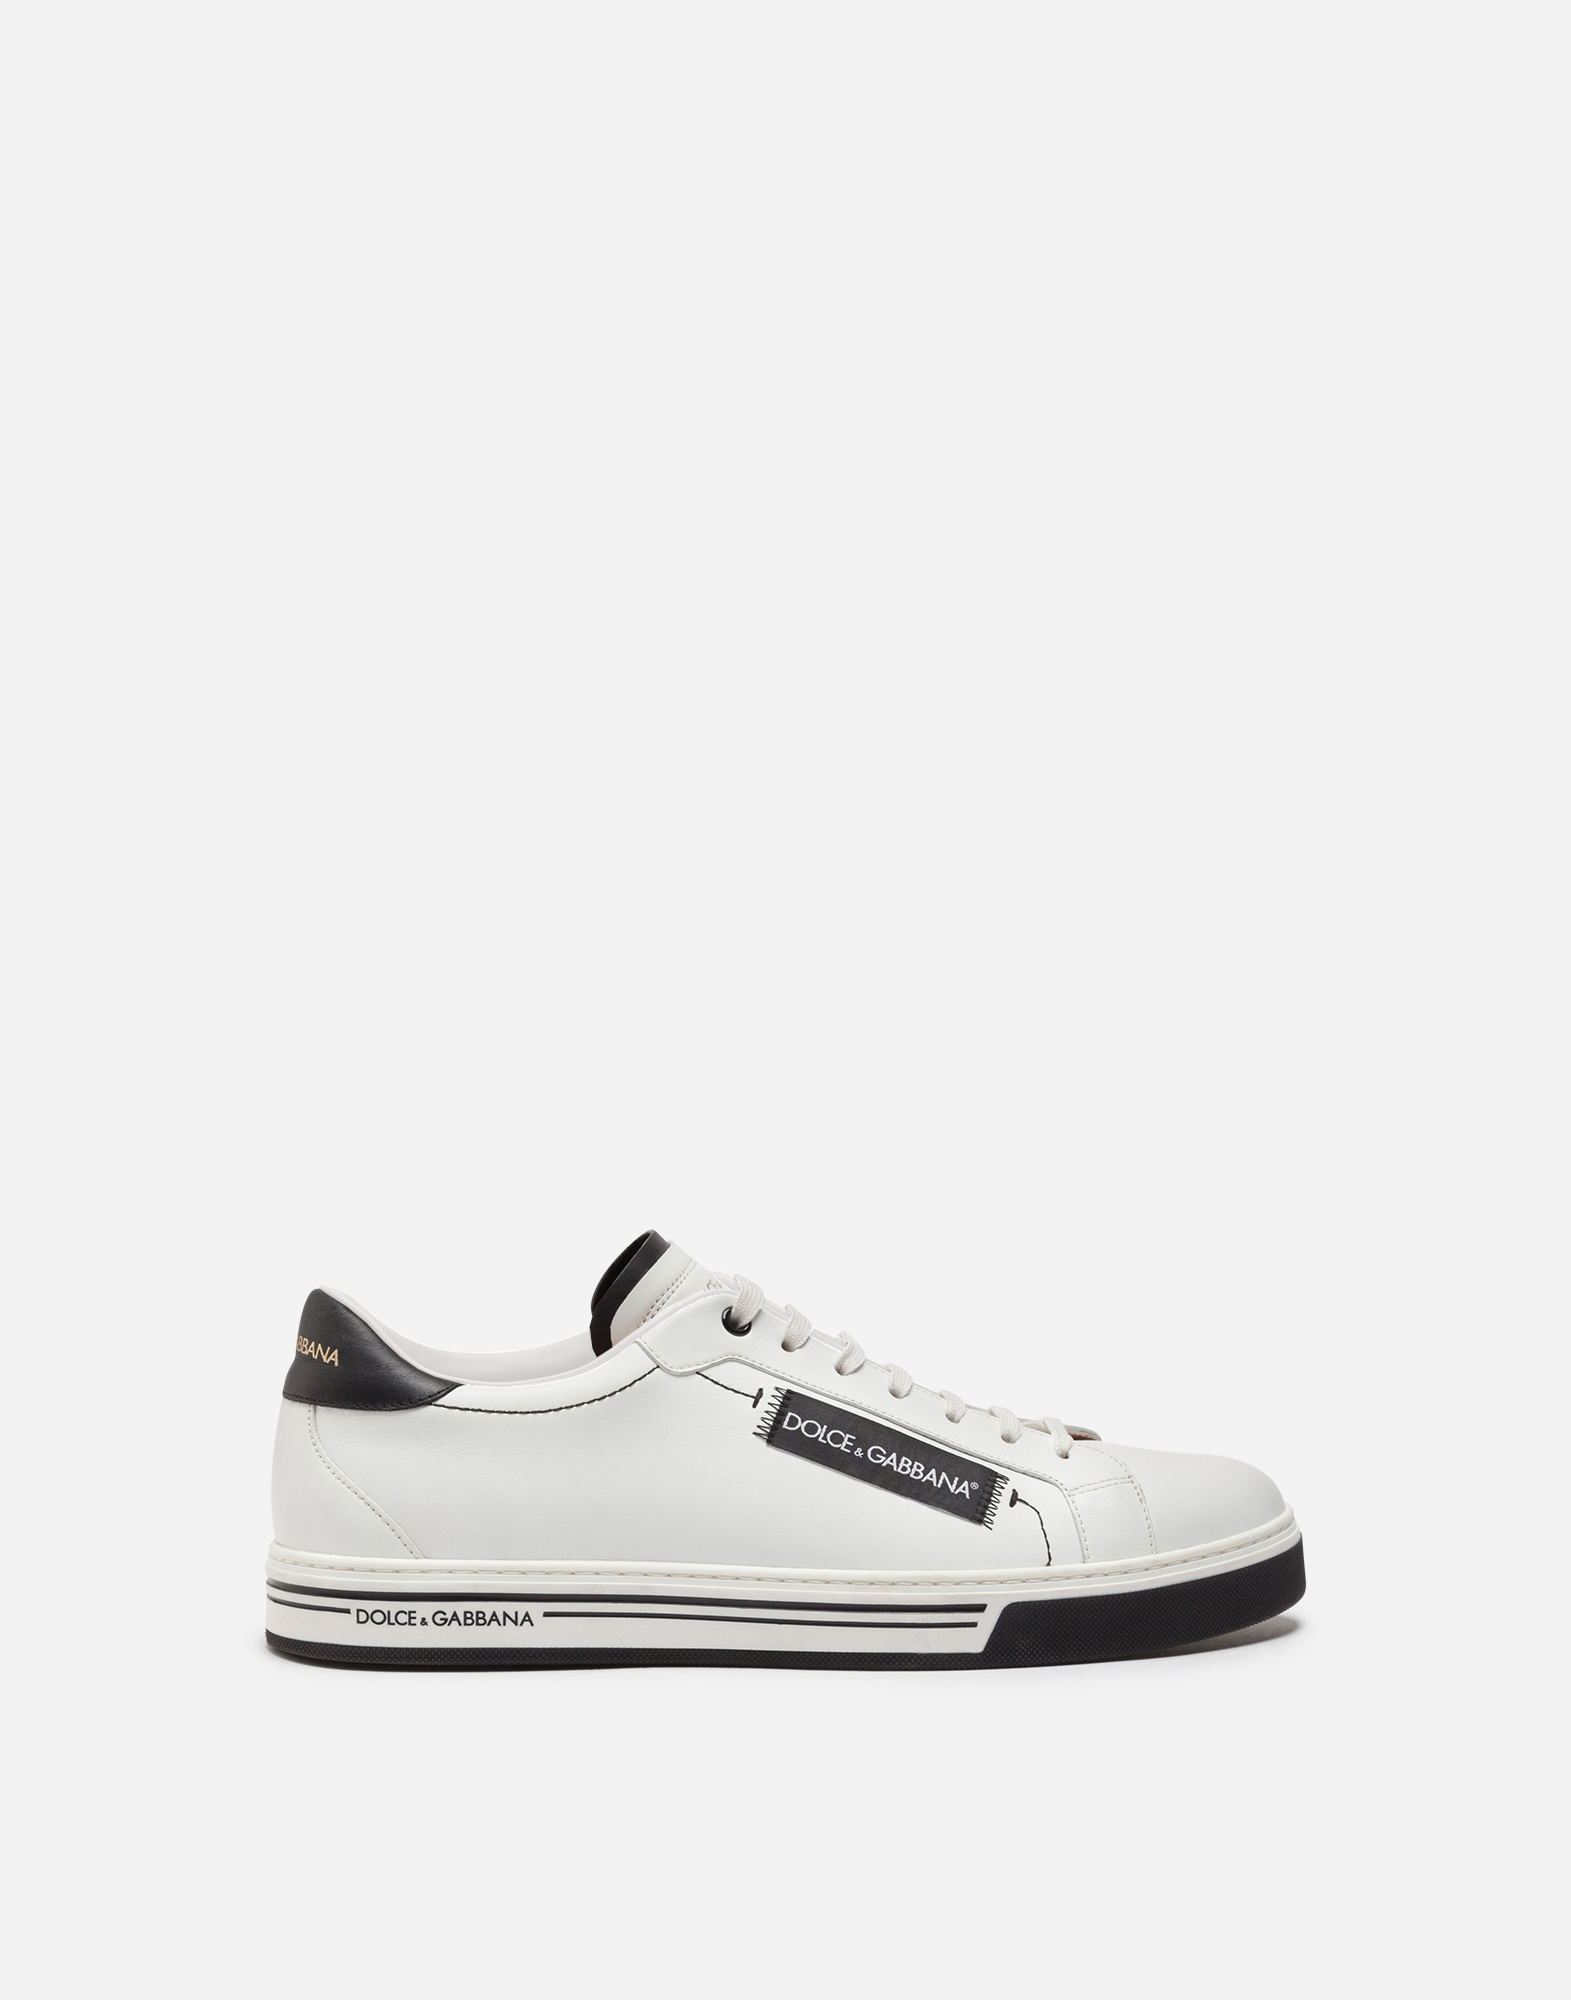 Roma sneakers in nappa calfskin in White/Black